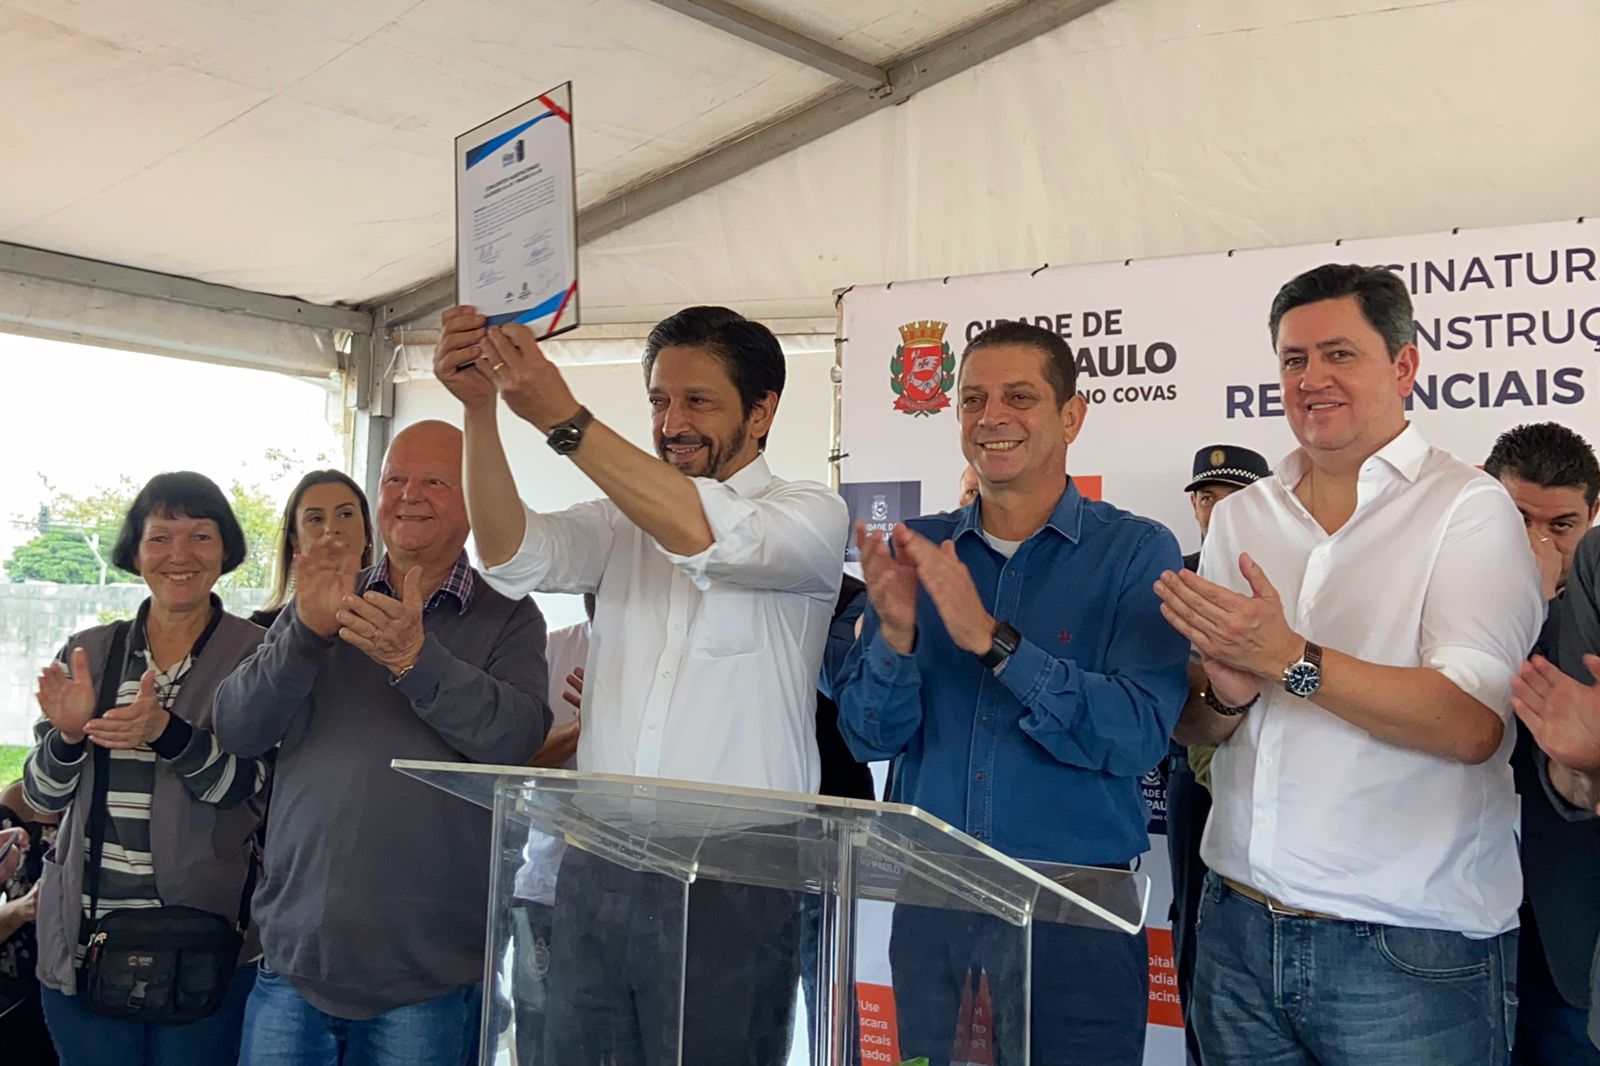 Prefeito de São Paulo Ricardo Nunes, no centro da foto, ergue o documento com as assinaturas que oficializam o início das obras de moradia. 